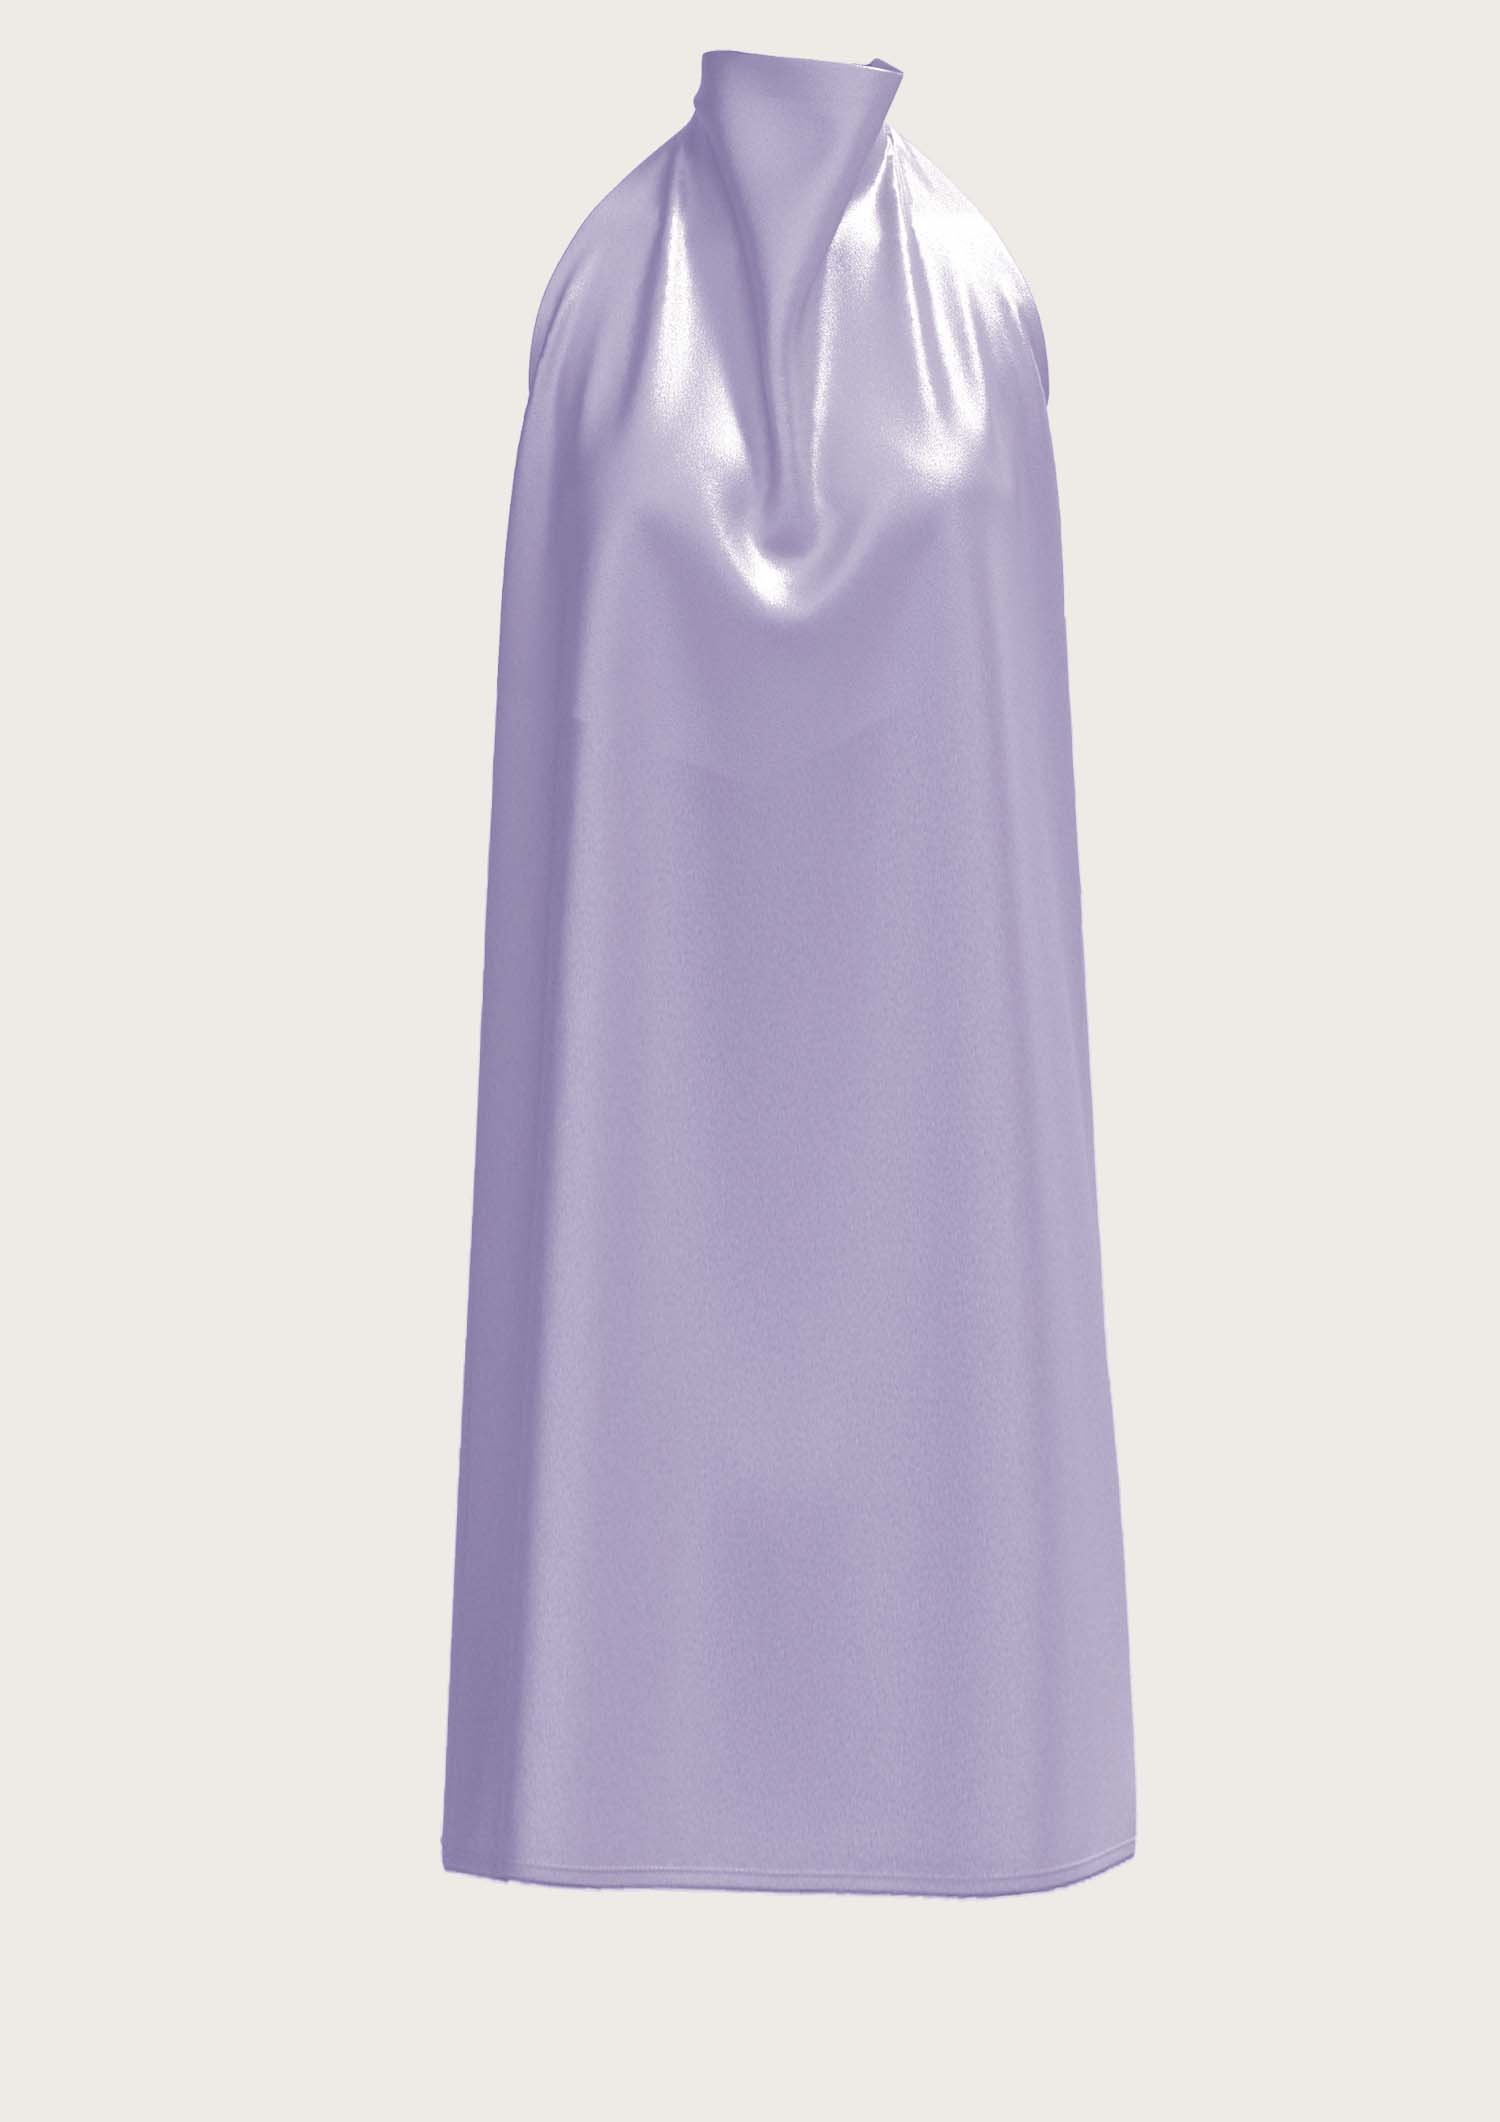 Silk Neckholder Dress Sophie in Lavender